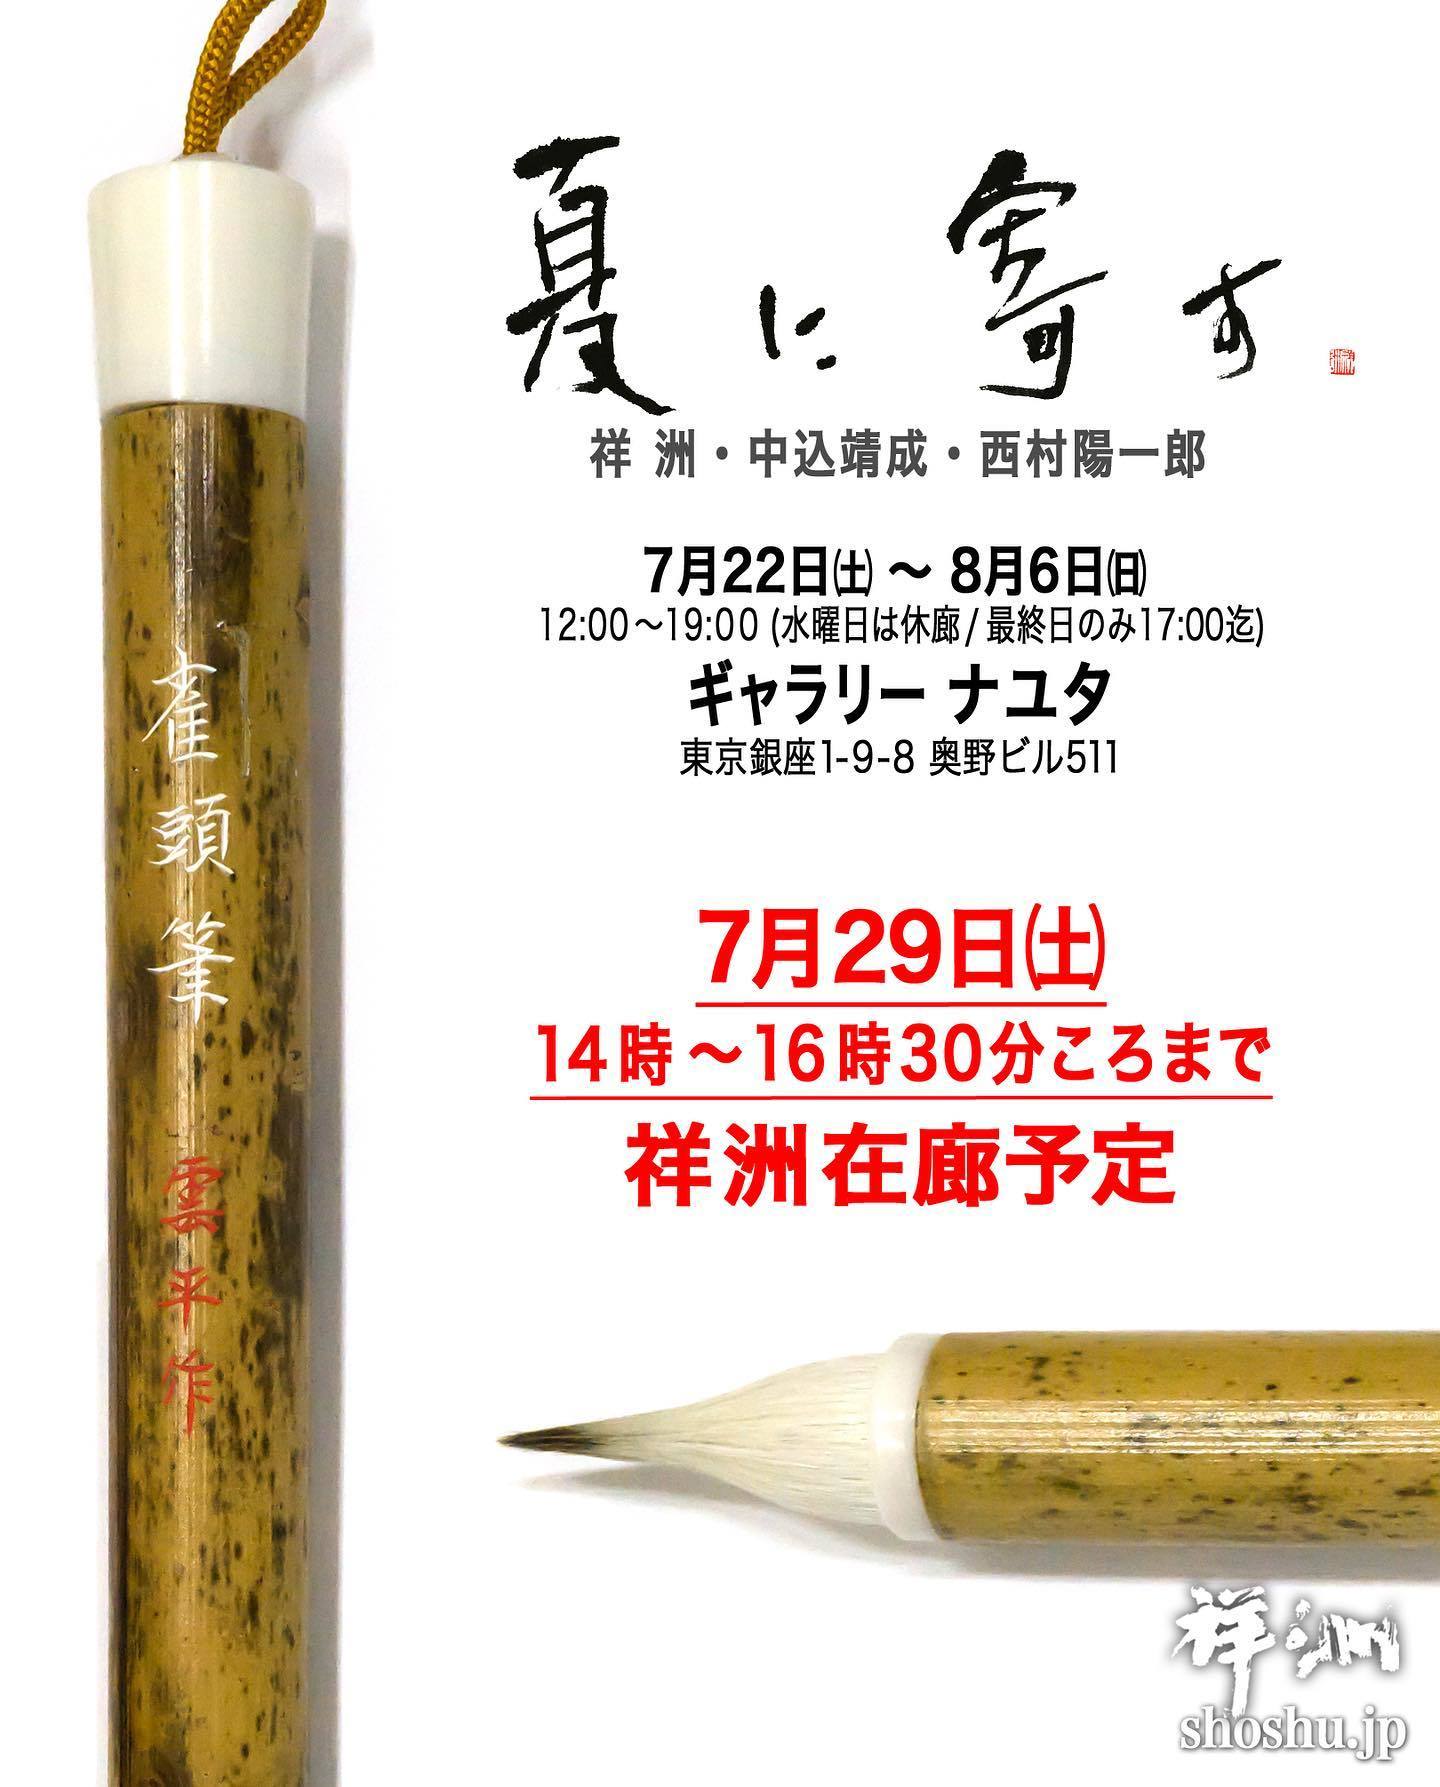 「夏に寄す」展にて雀頭筆で書かれた作品が展示されています(*‘∀‘)♪_b0165454_11144382.jpg